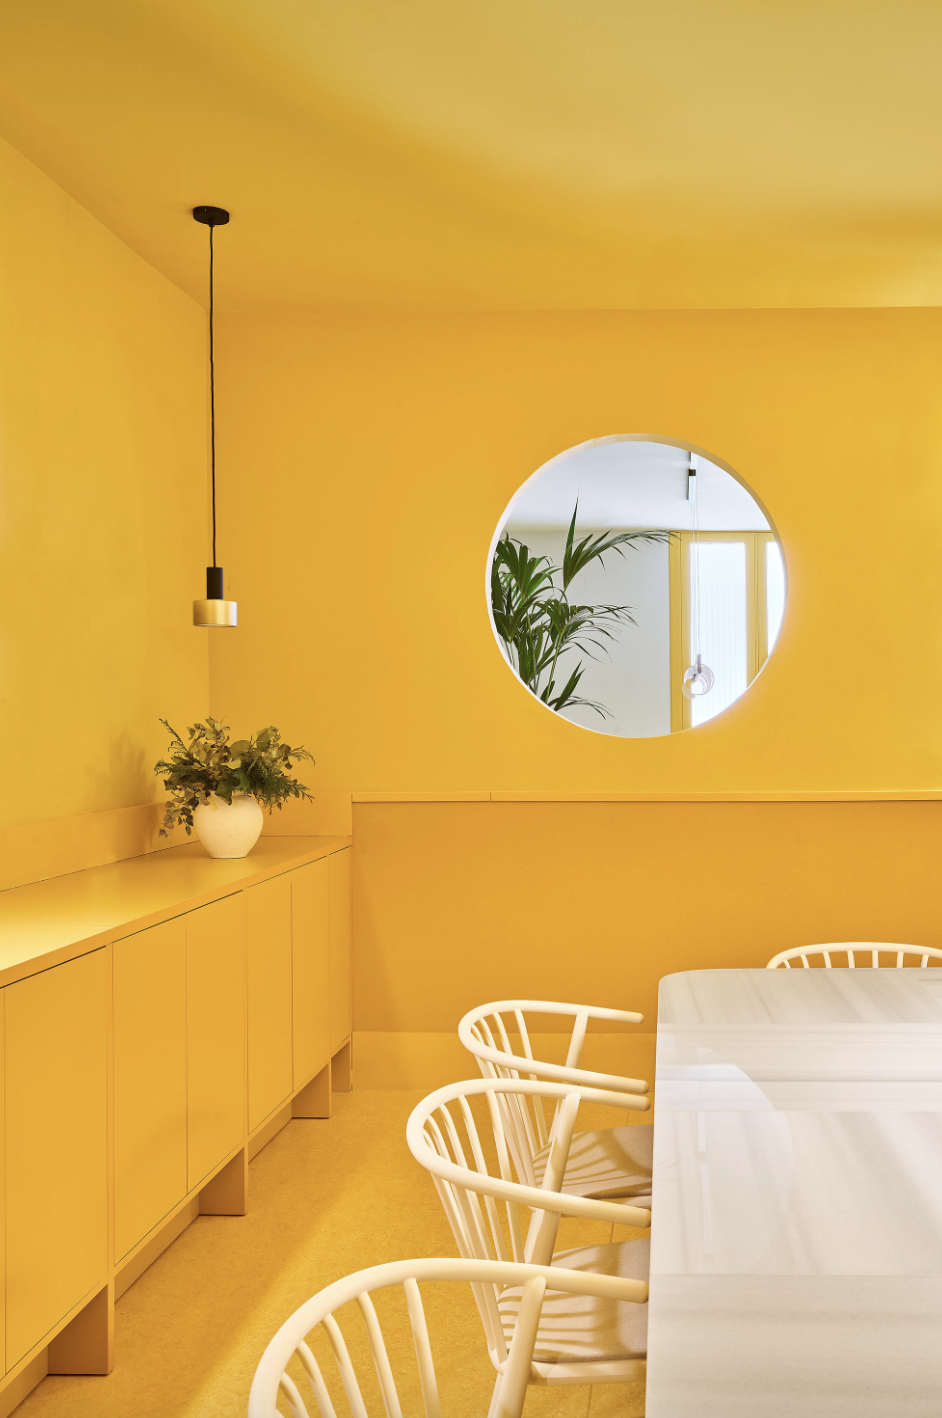 mesa de salón blanca con sillas de mimbre blancas y el resto, paredes y muebles, en amarillo, con una ventana redonda